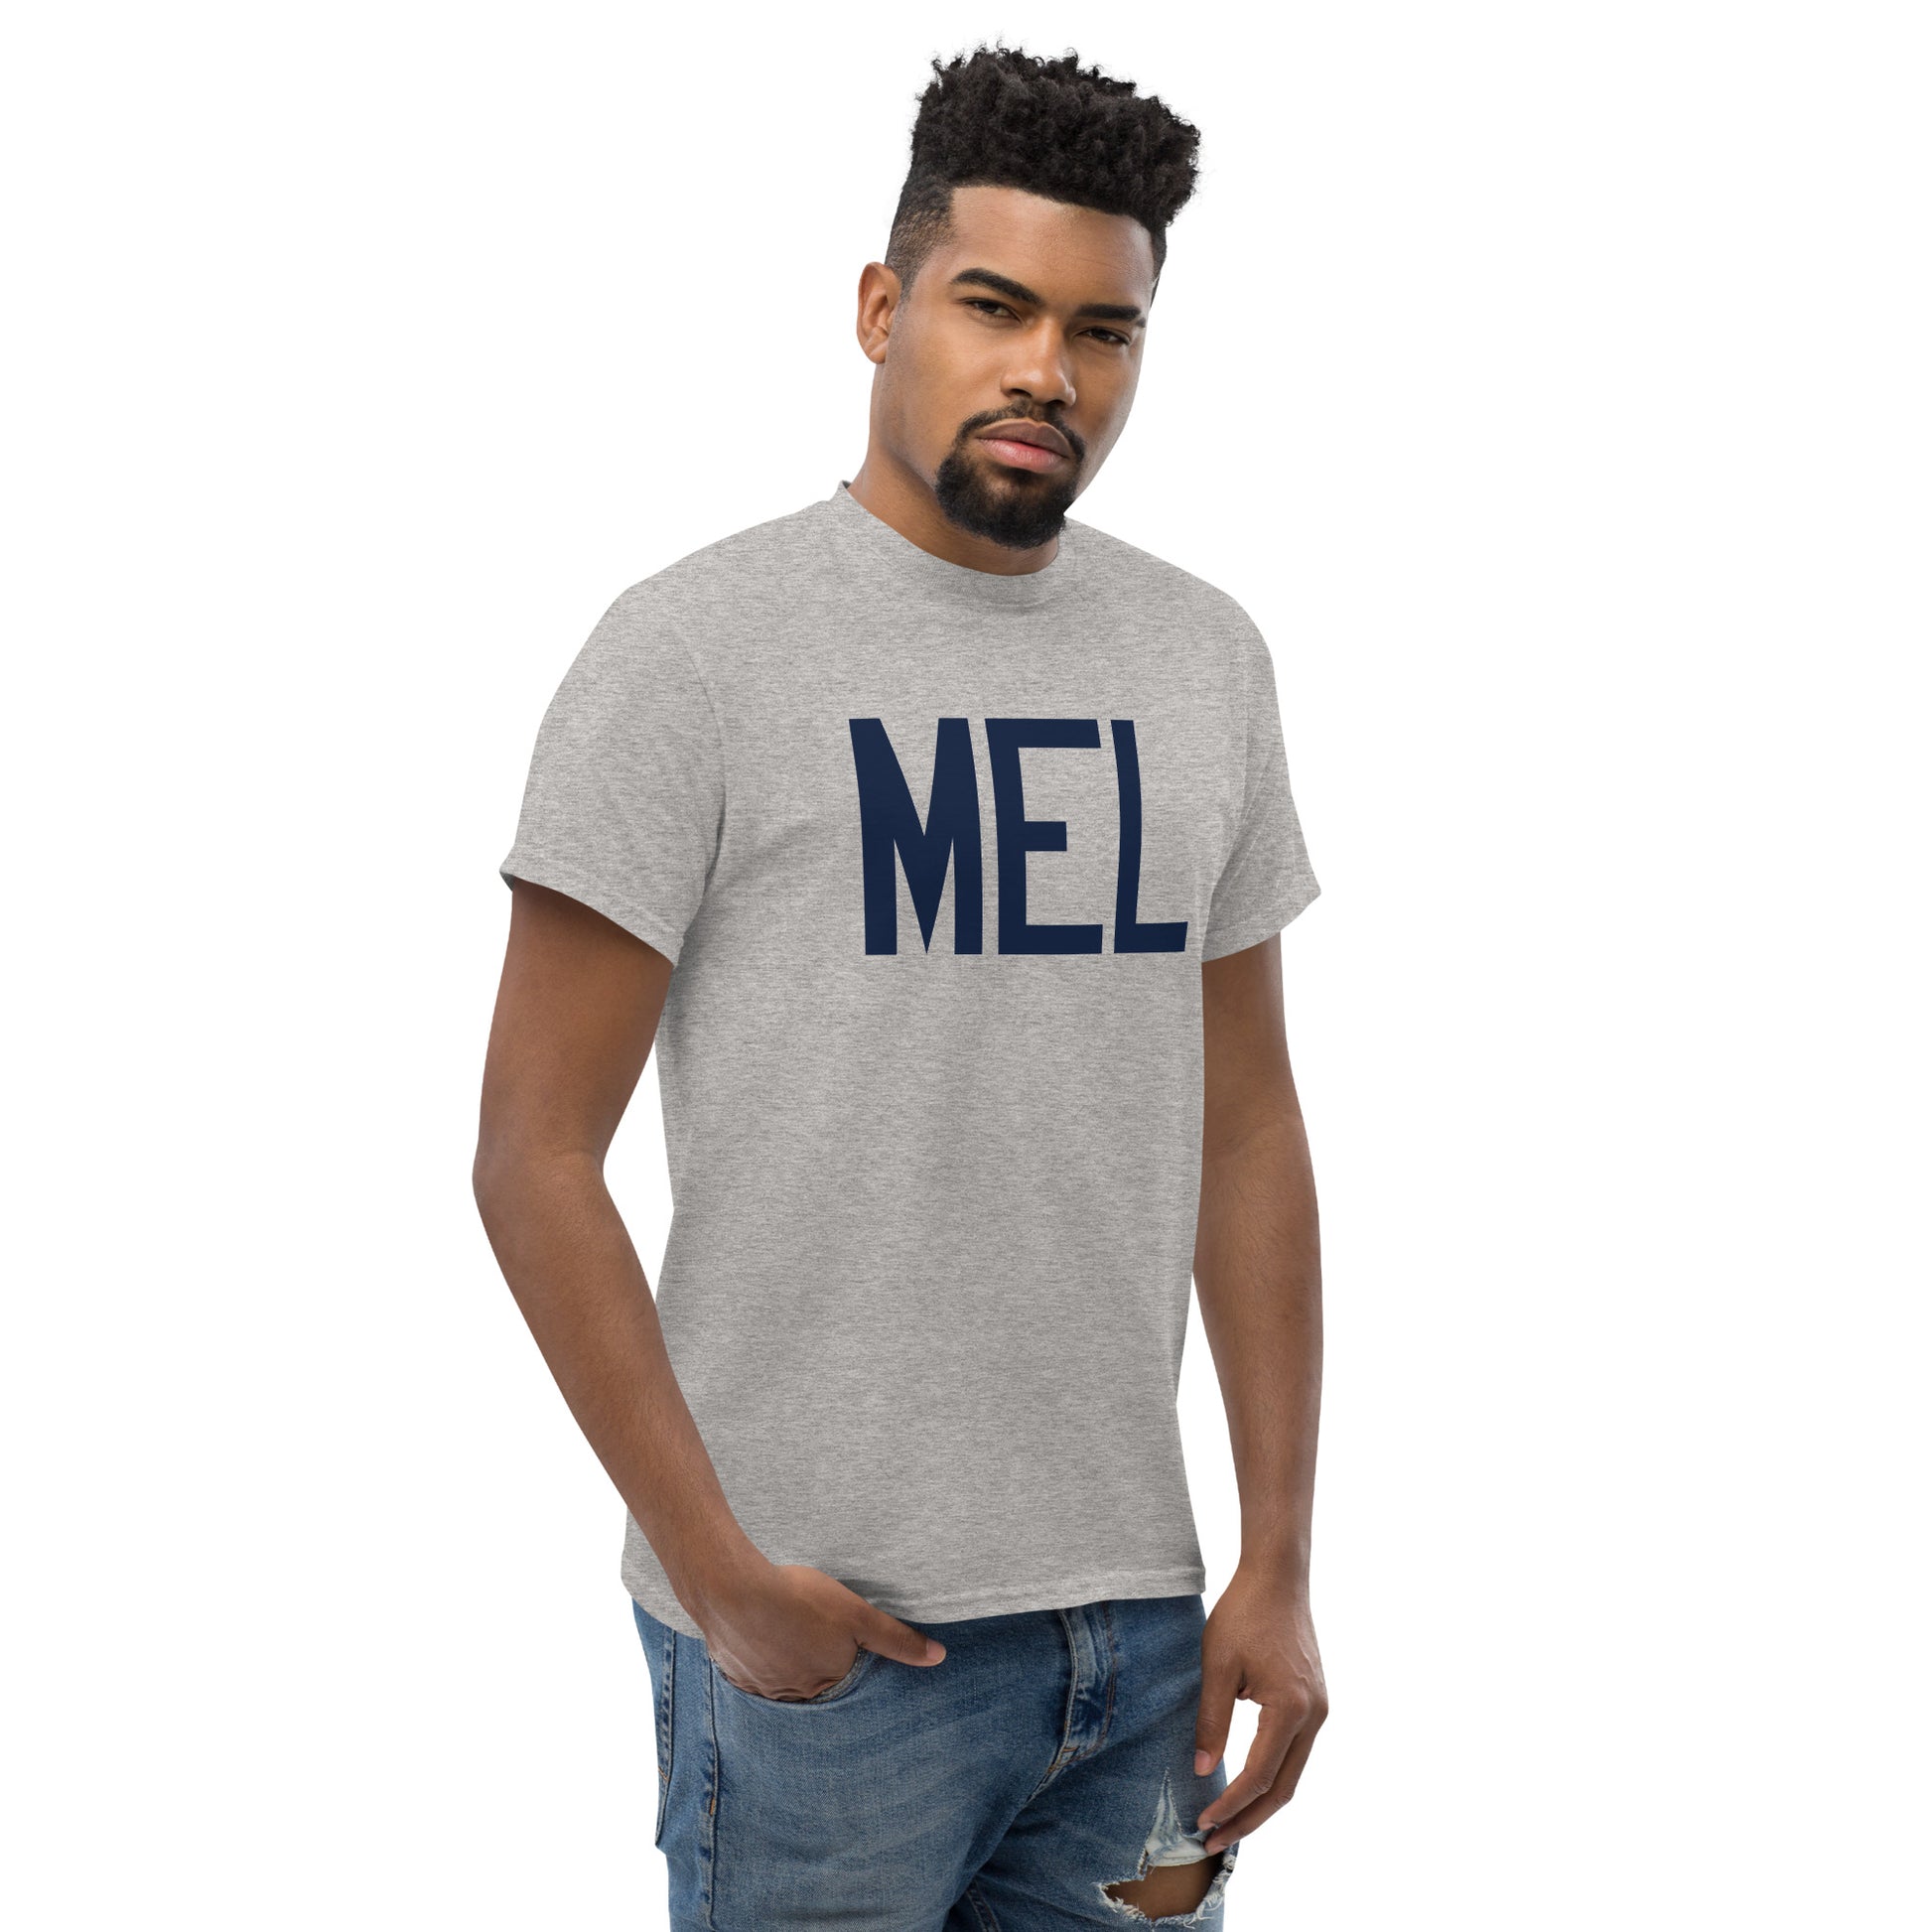 Aviation-Theme Men's T-Shirt - Navy Blue Graphic • MEL Melbourne • YHM Designs - Image 08